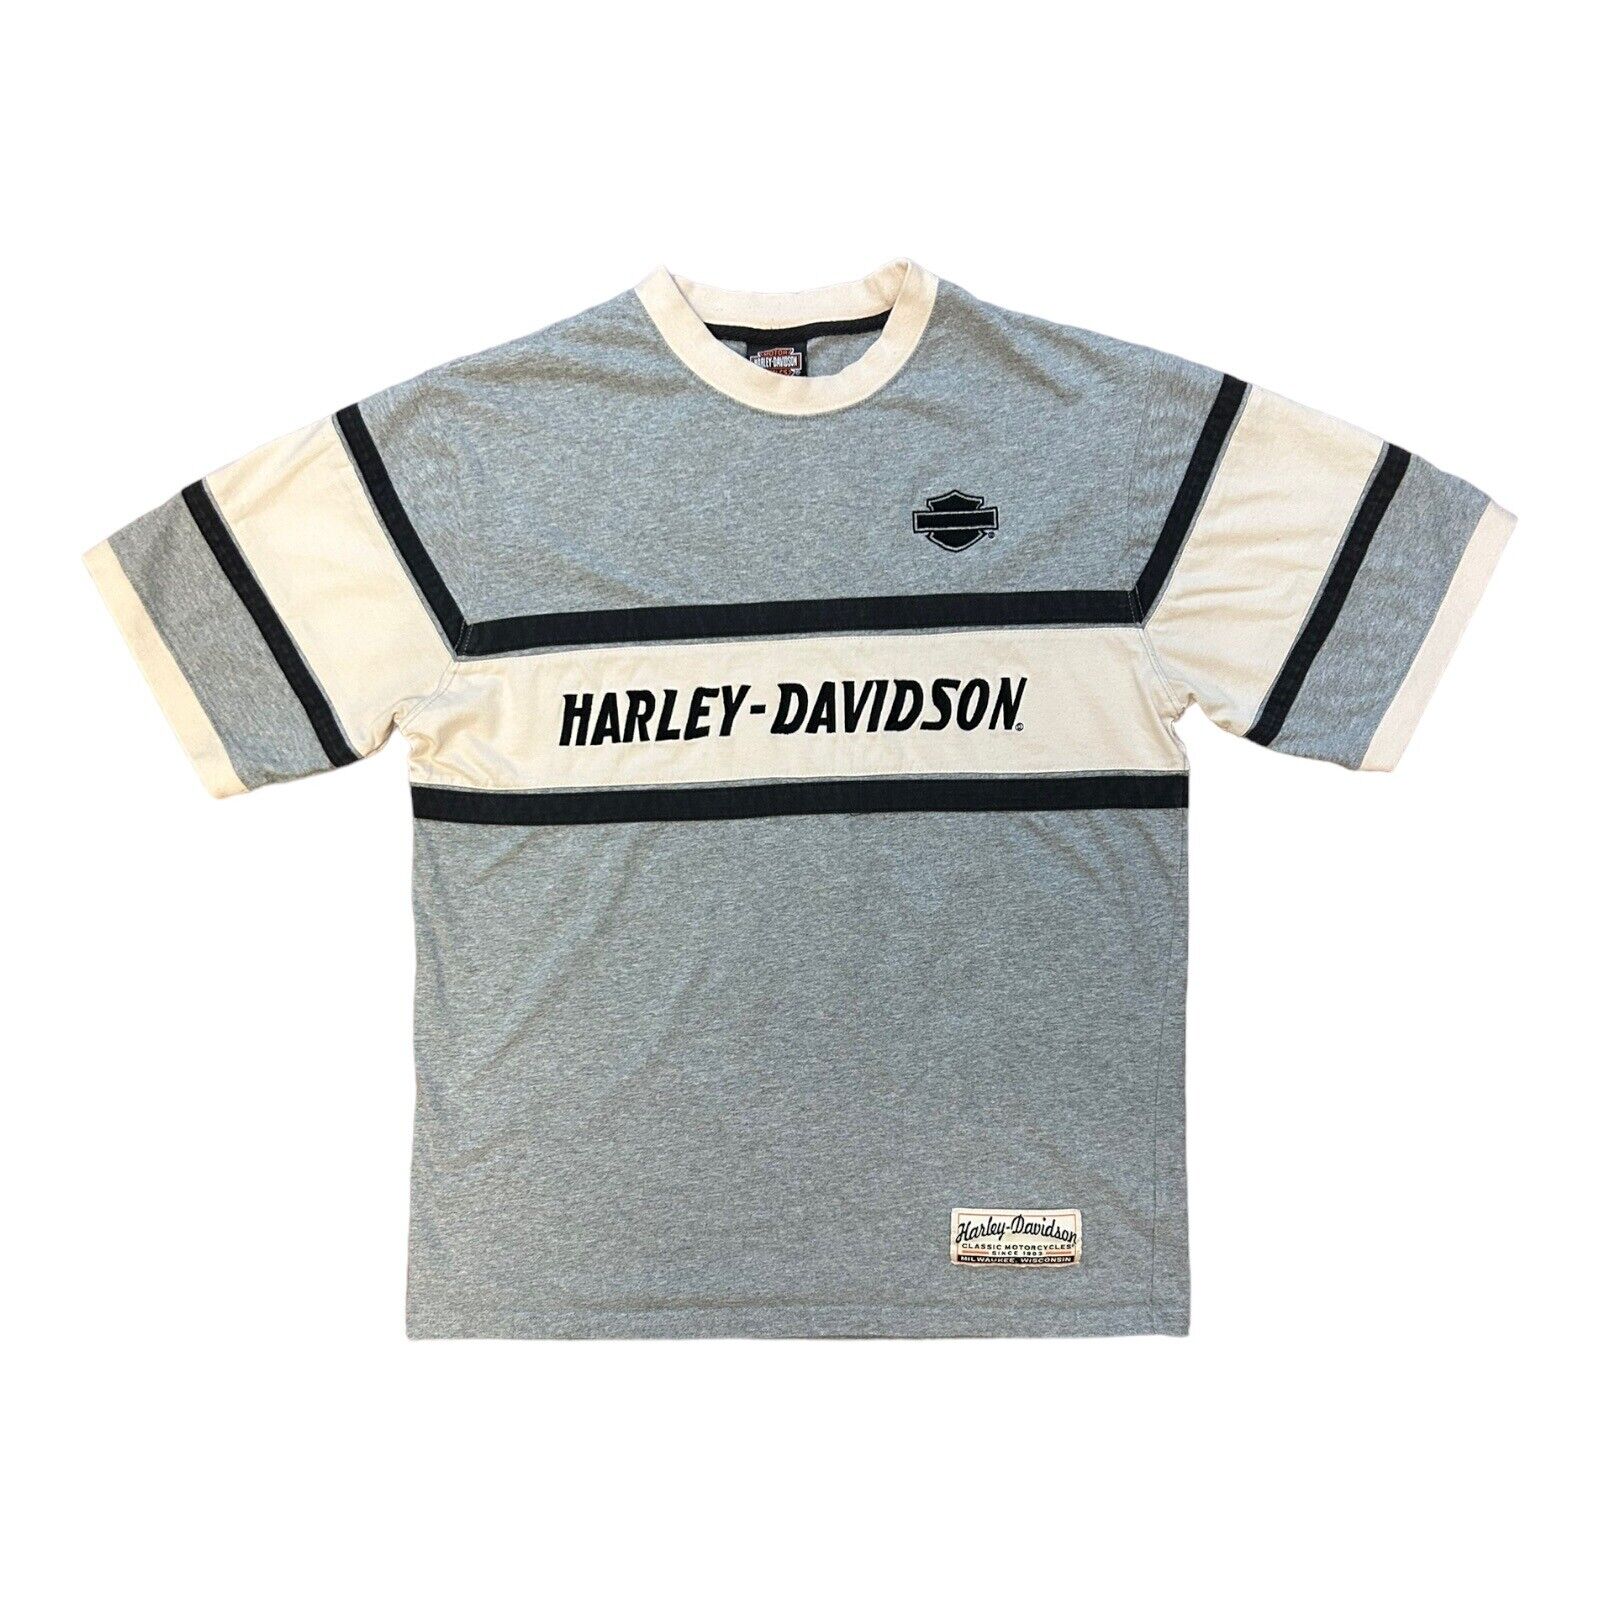 Harley Davidson Men’s  T-Shirt, Medium, Gray, Milwaukee Wisconsin